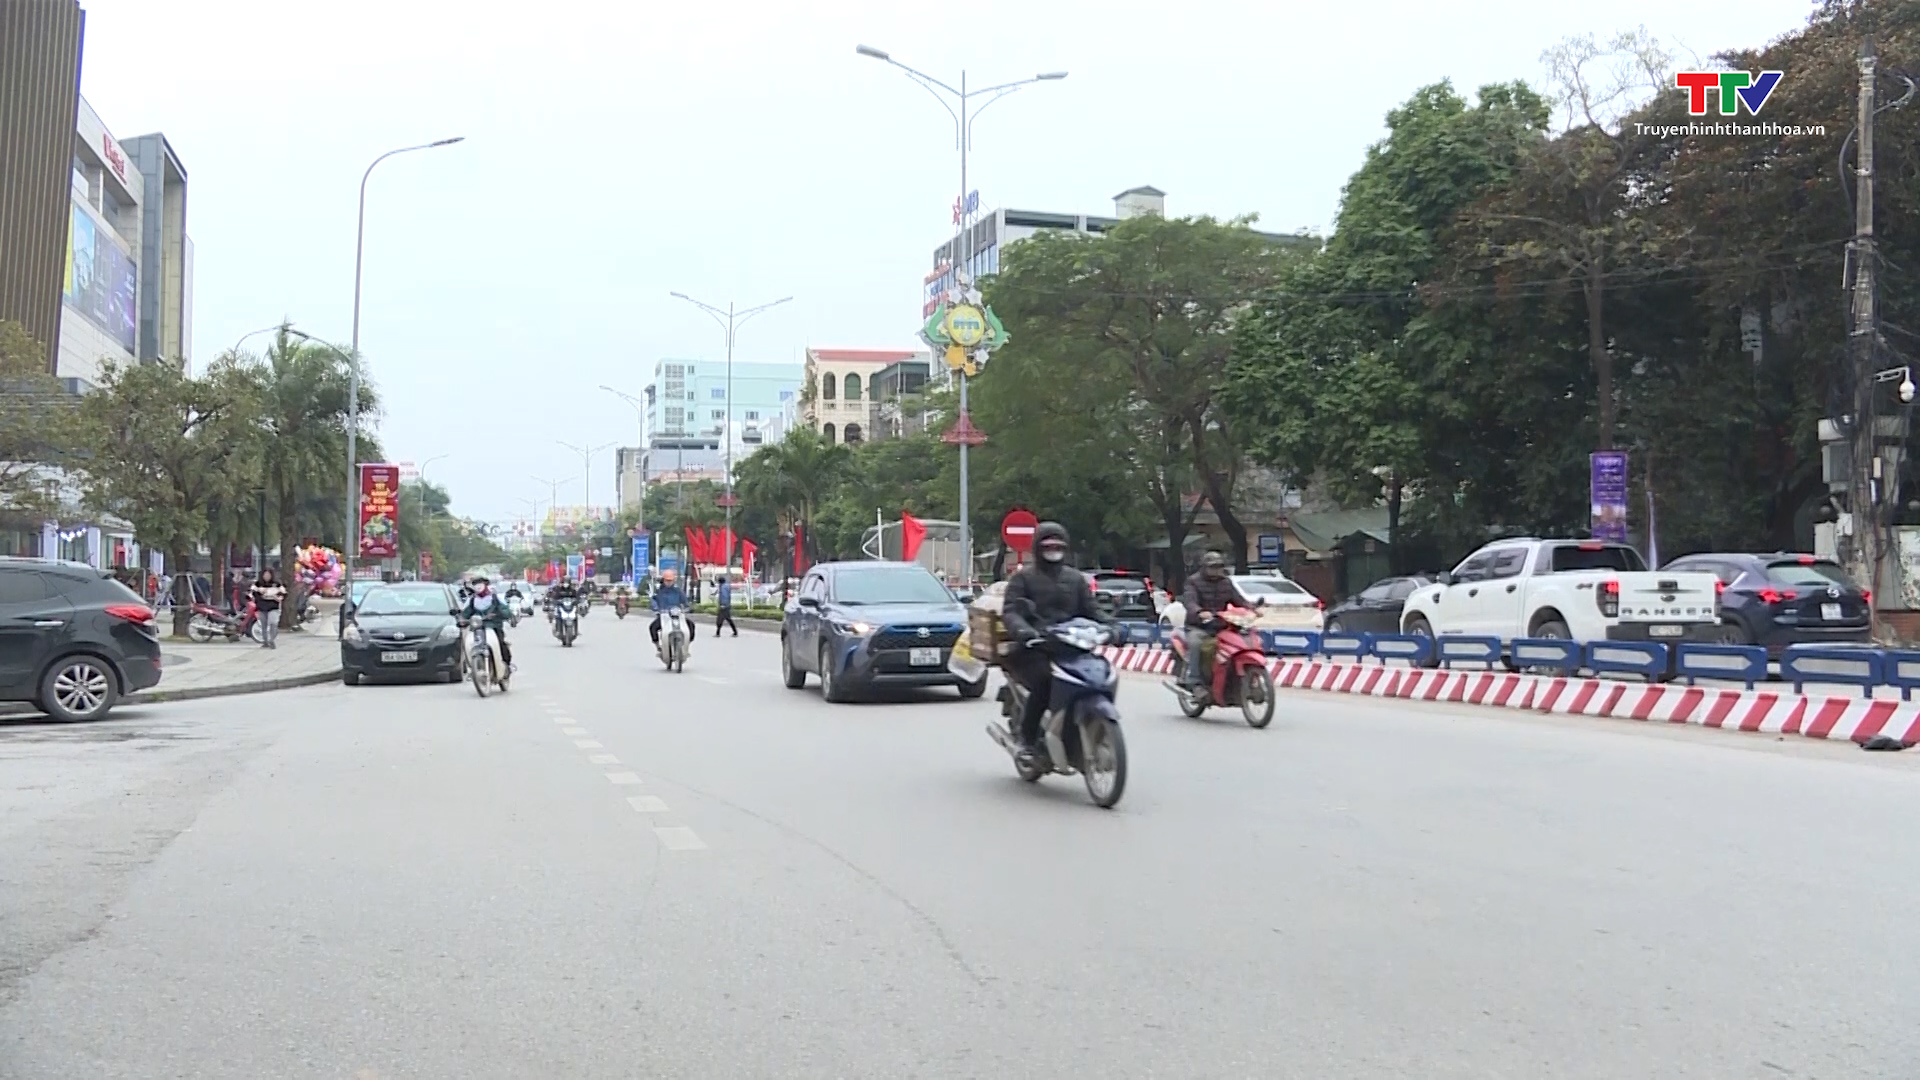 Thành phố Thanh Hóa triển khai phương án đảm bảo giao thông, chống ùn tắc những ngày giáp Tết- Ảnh 1.